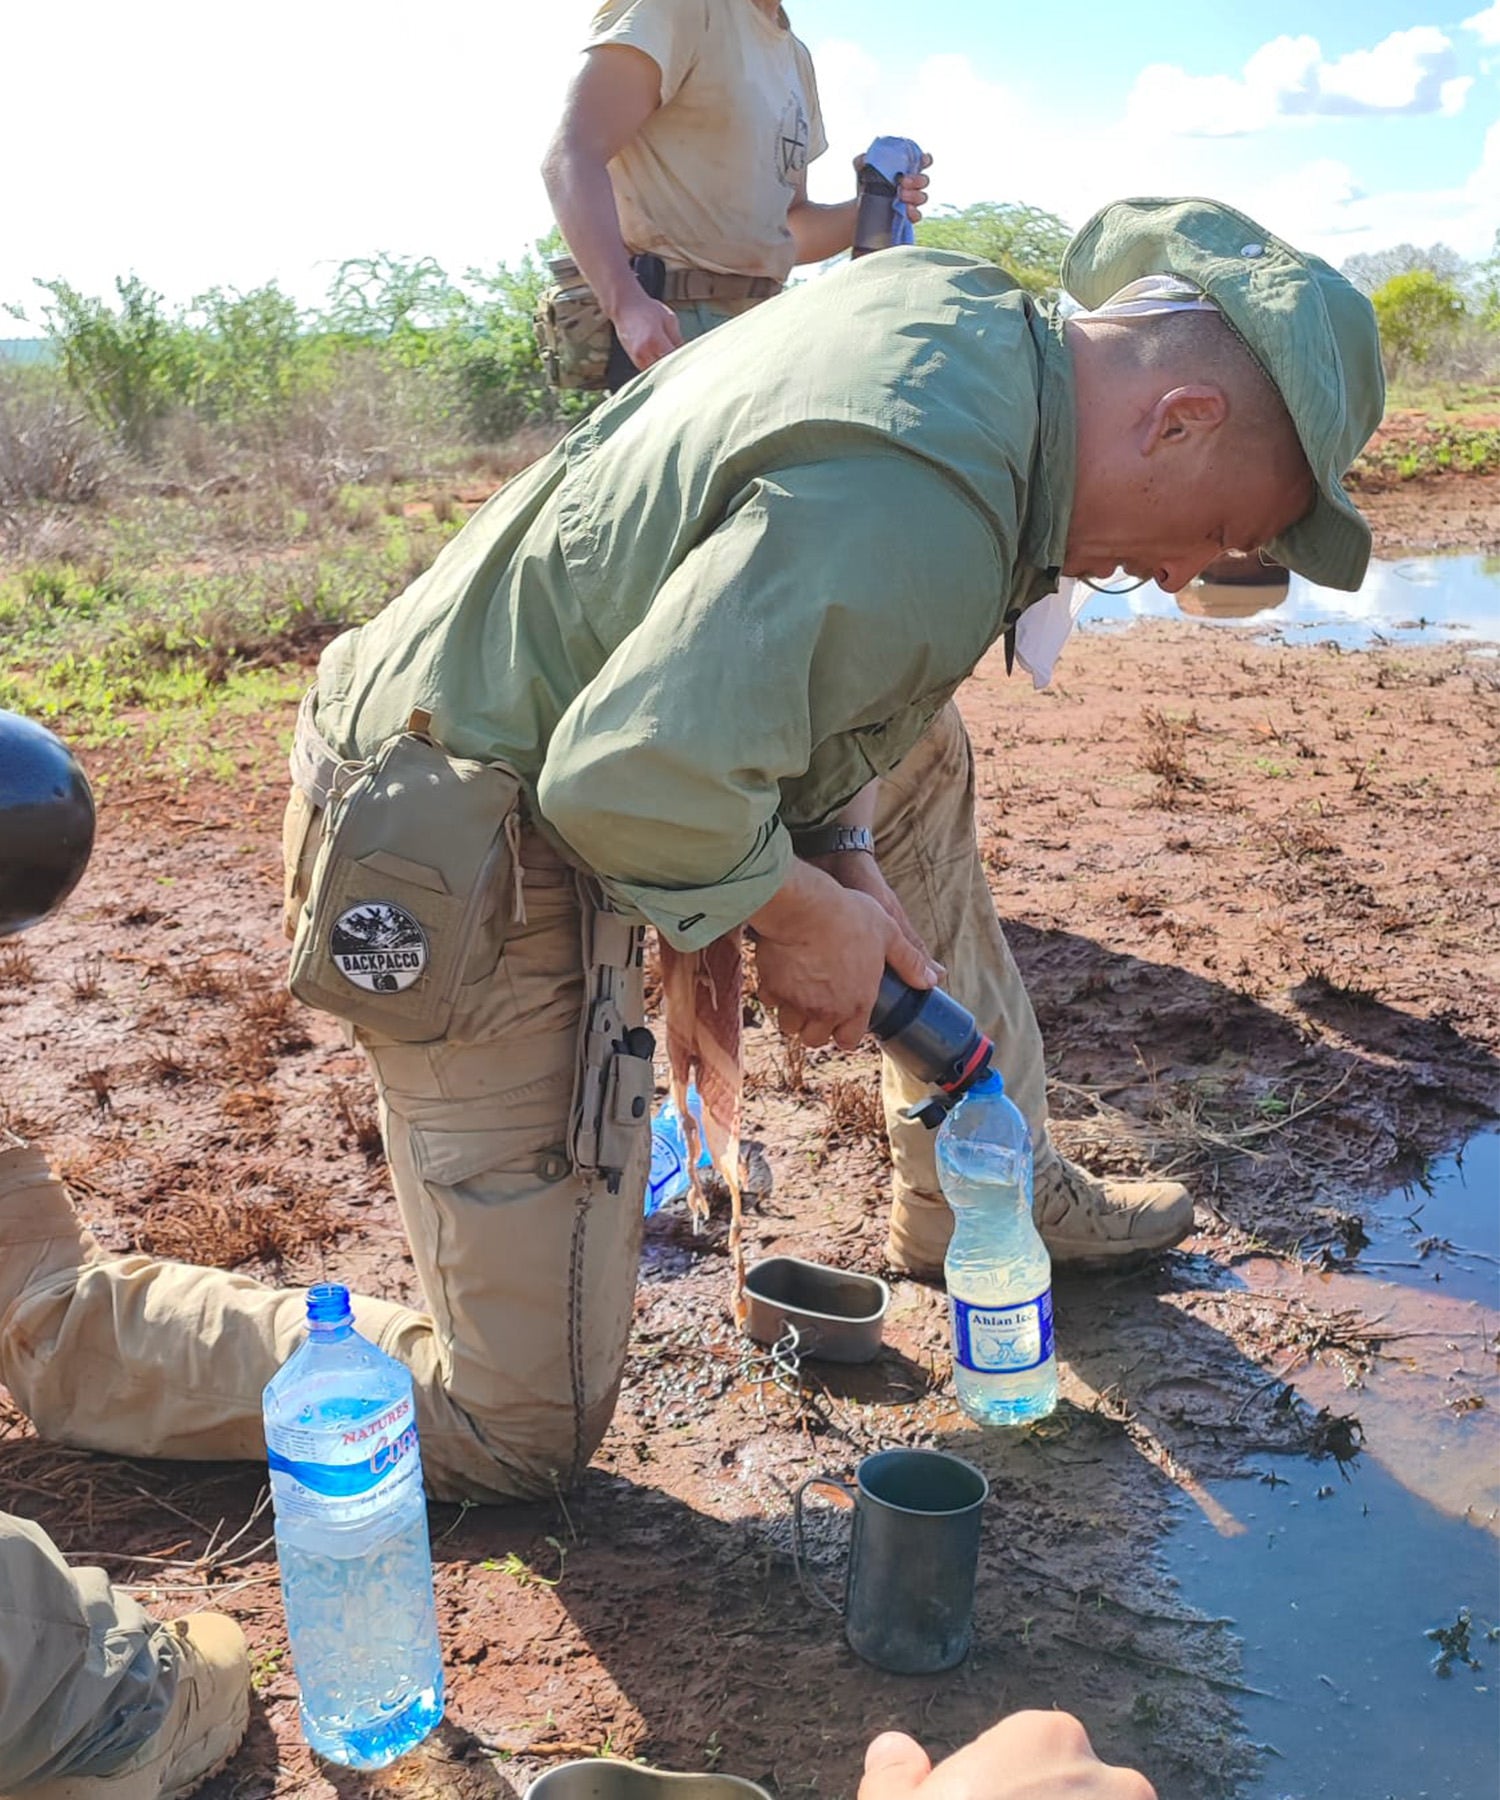 Milo filtra l'acqua di una pozzanghera con la water to go mentre ha alla cintura la sua UCR Ifak durante lo SNAKE 22 in kenya